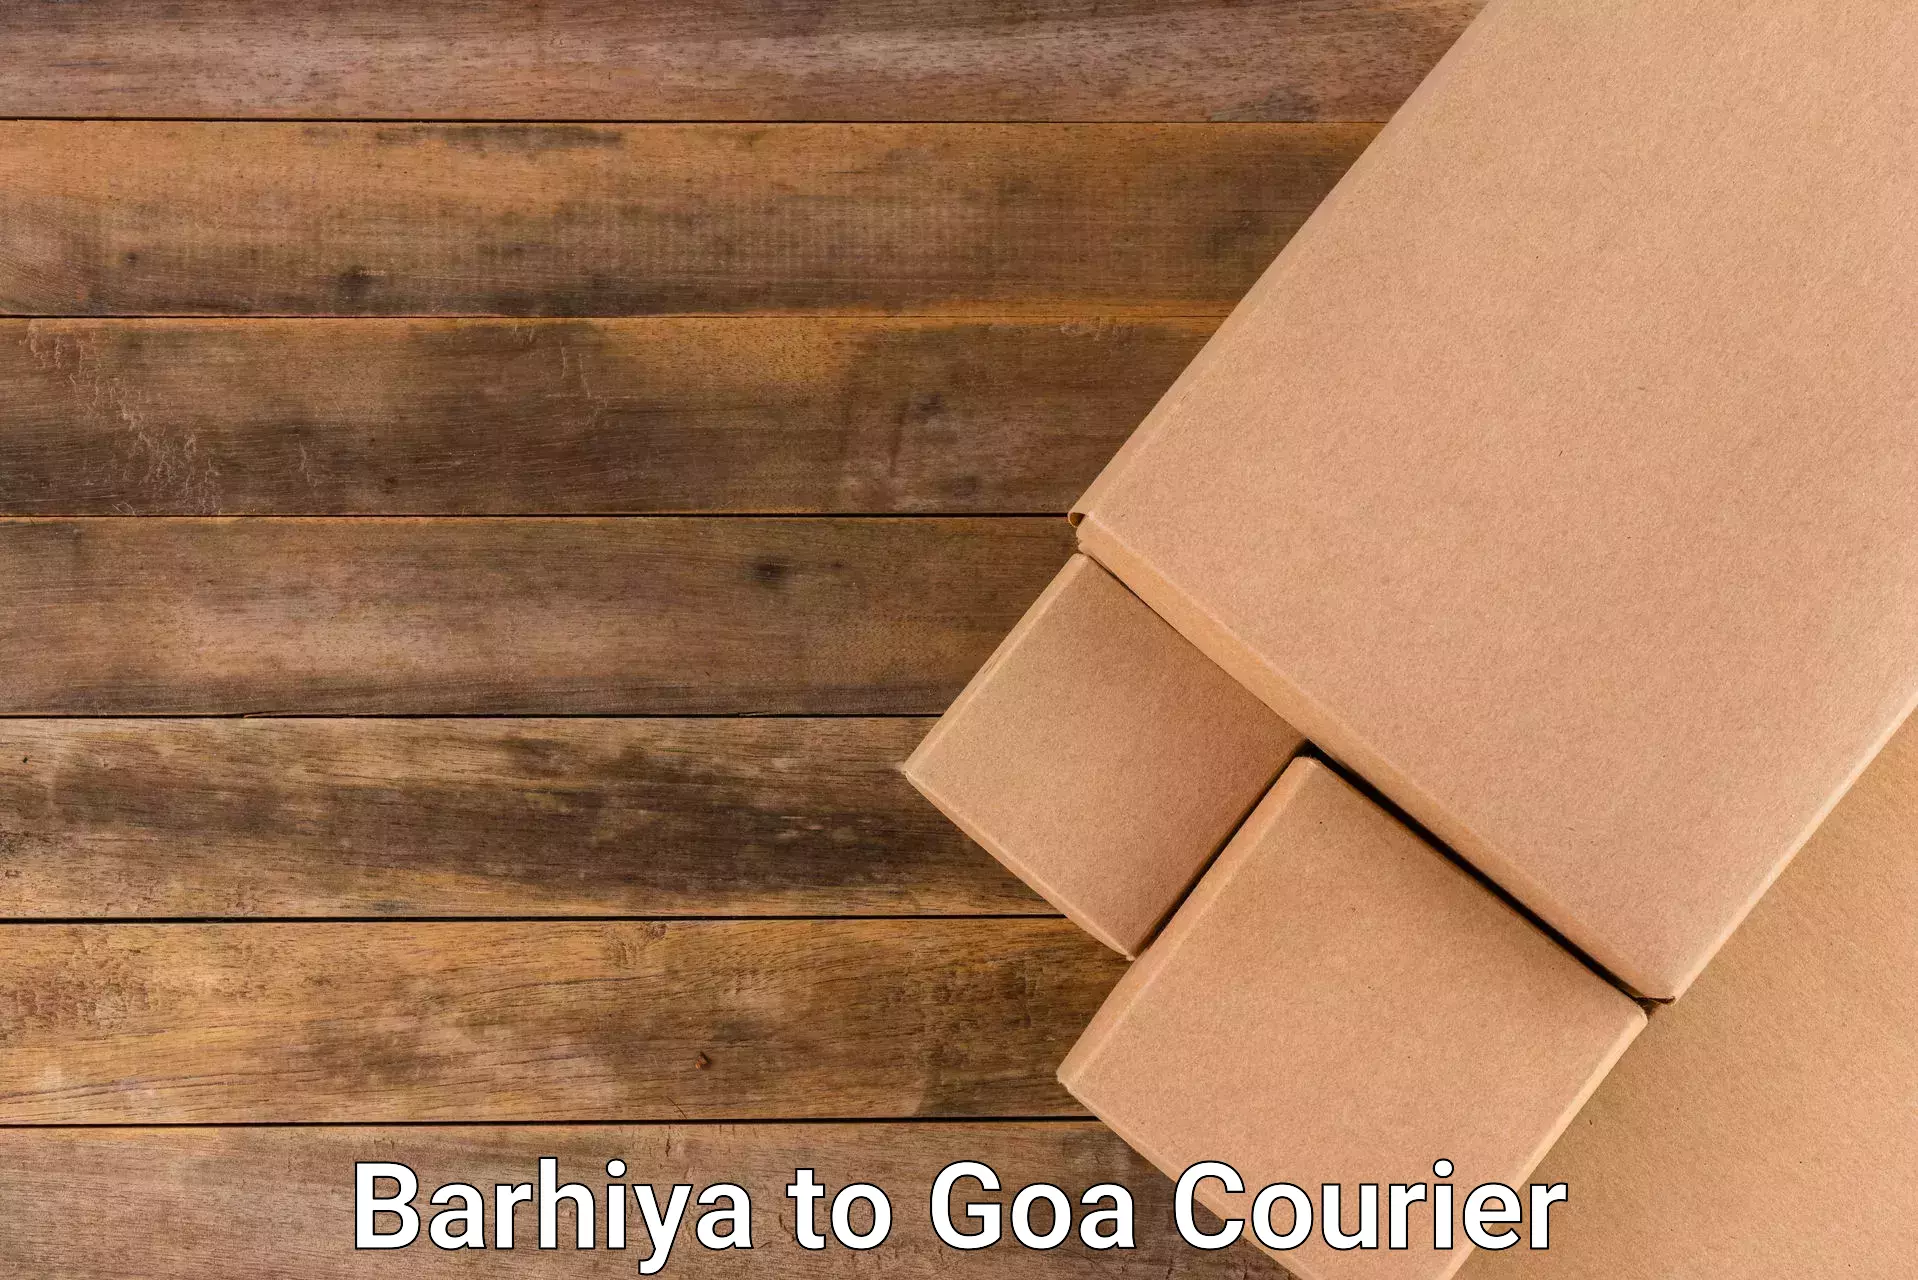 Urban courier service Barhiya to Goa